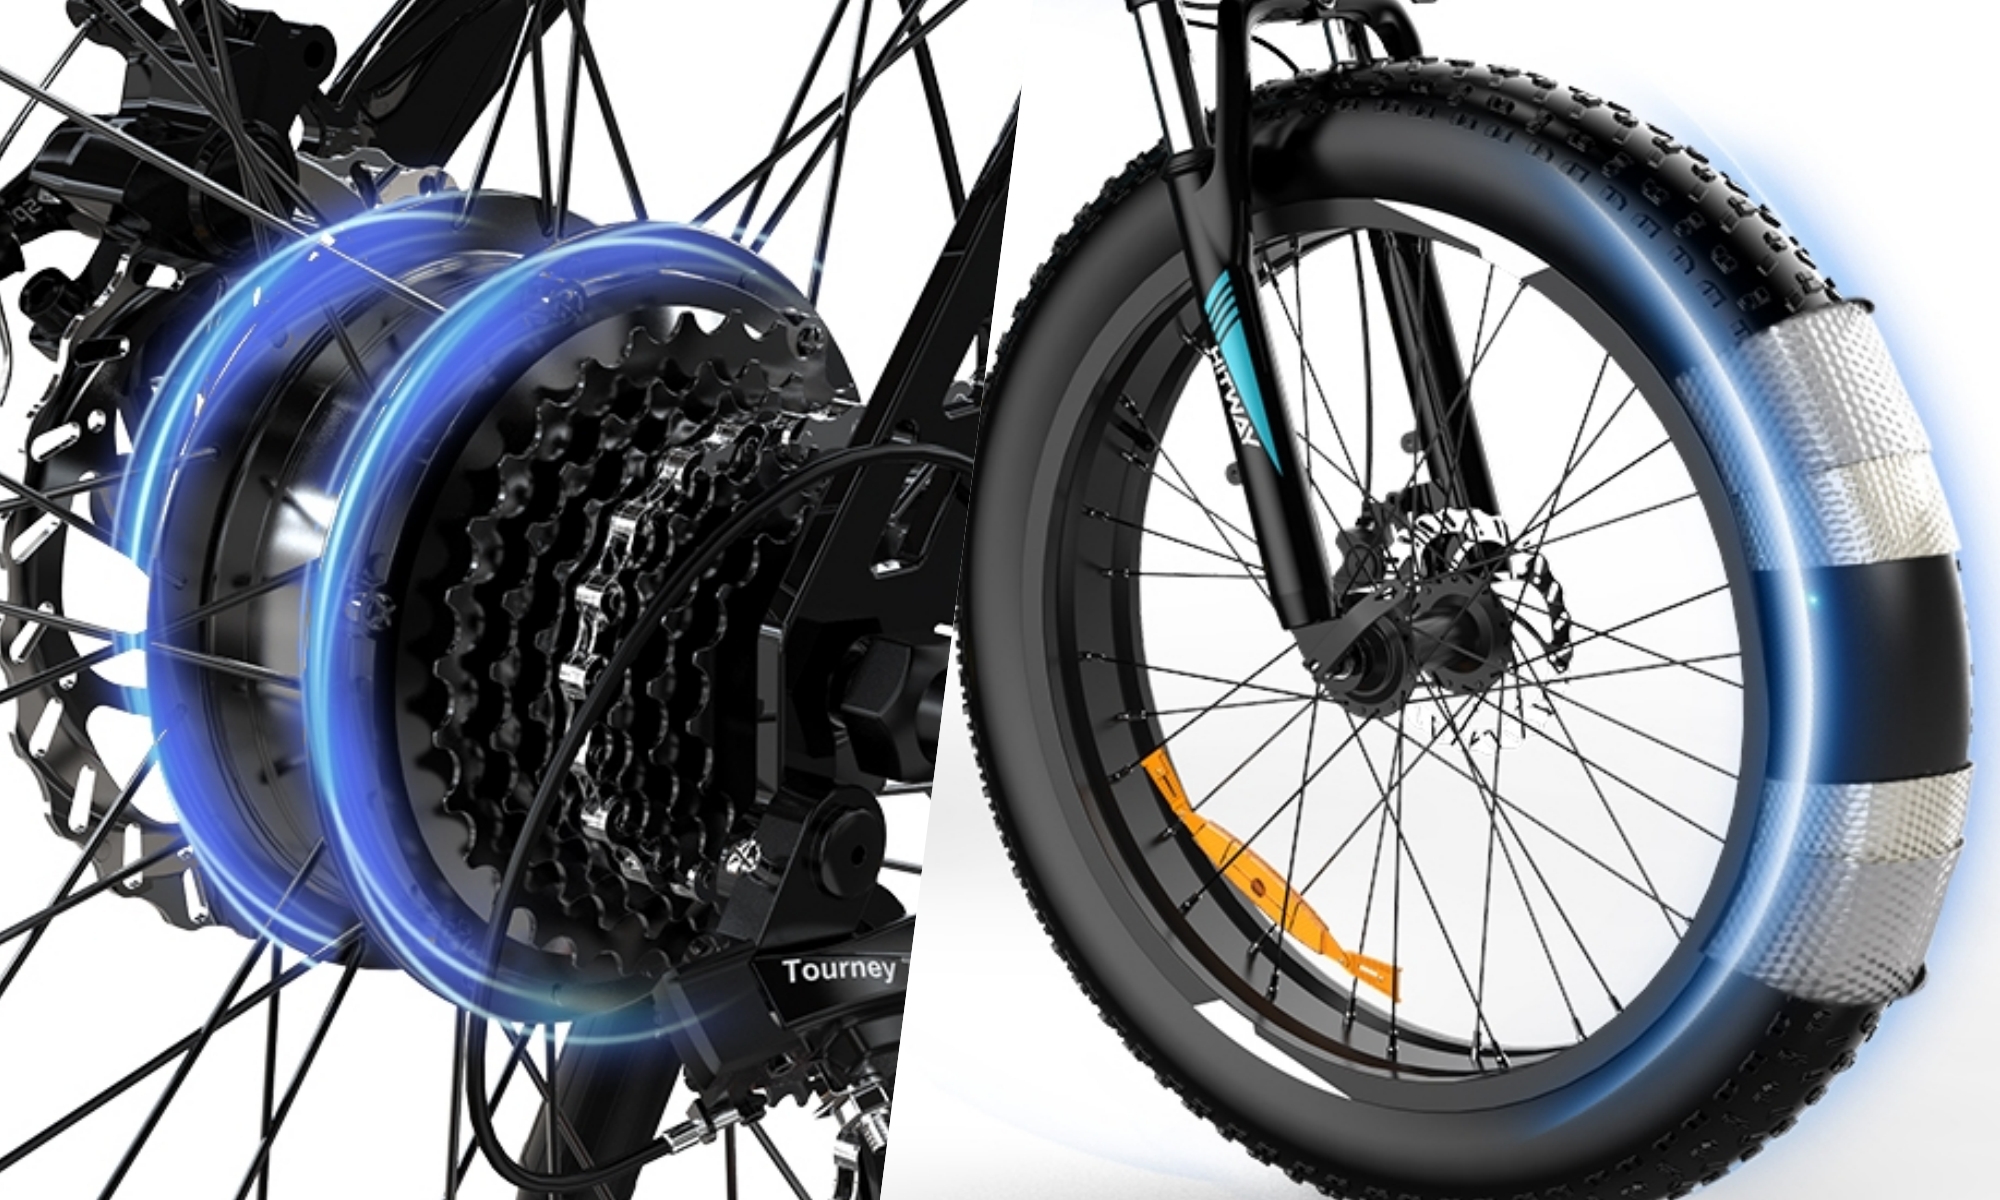 Con 7 velocidades manuales y unas ruedas así de gruesas, esta bicicleta te llevará por cualquier sendero o camino con seguridad.